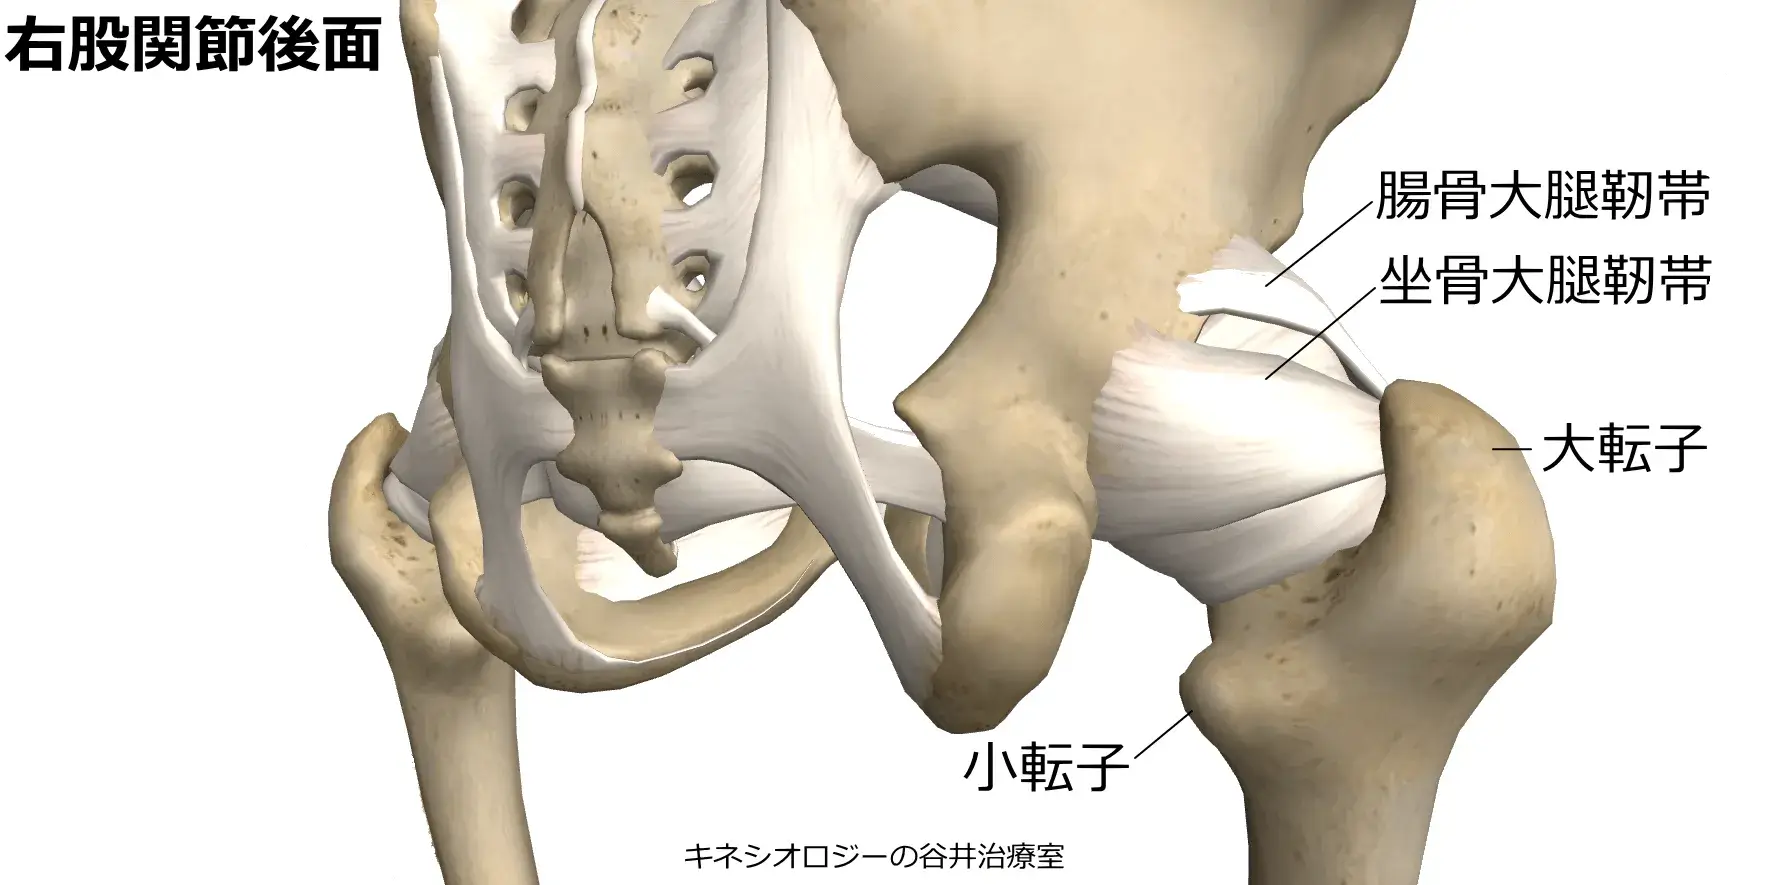 札幌股関節痛整体治療院・股関節靭帯